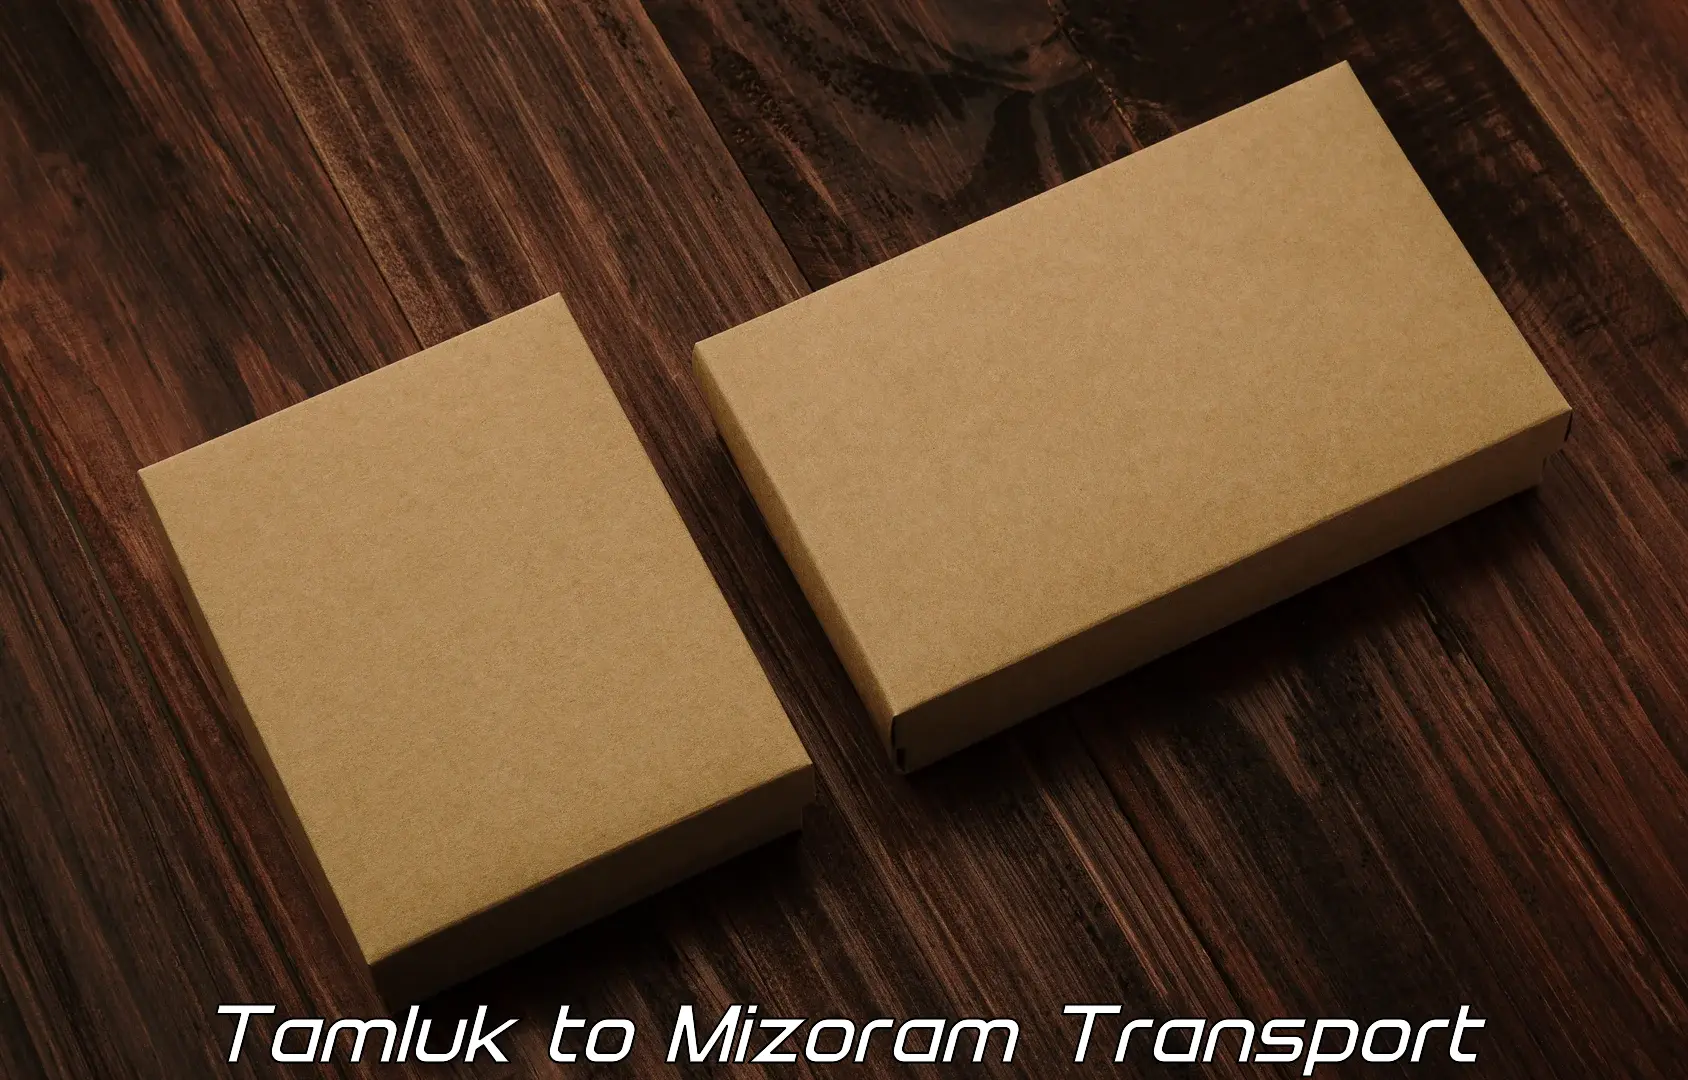 Shipping partner Tamluk to Mizoram